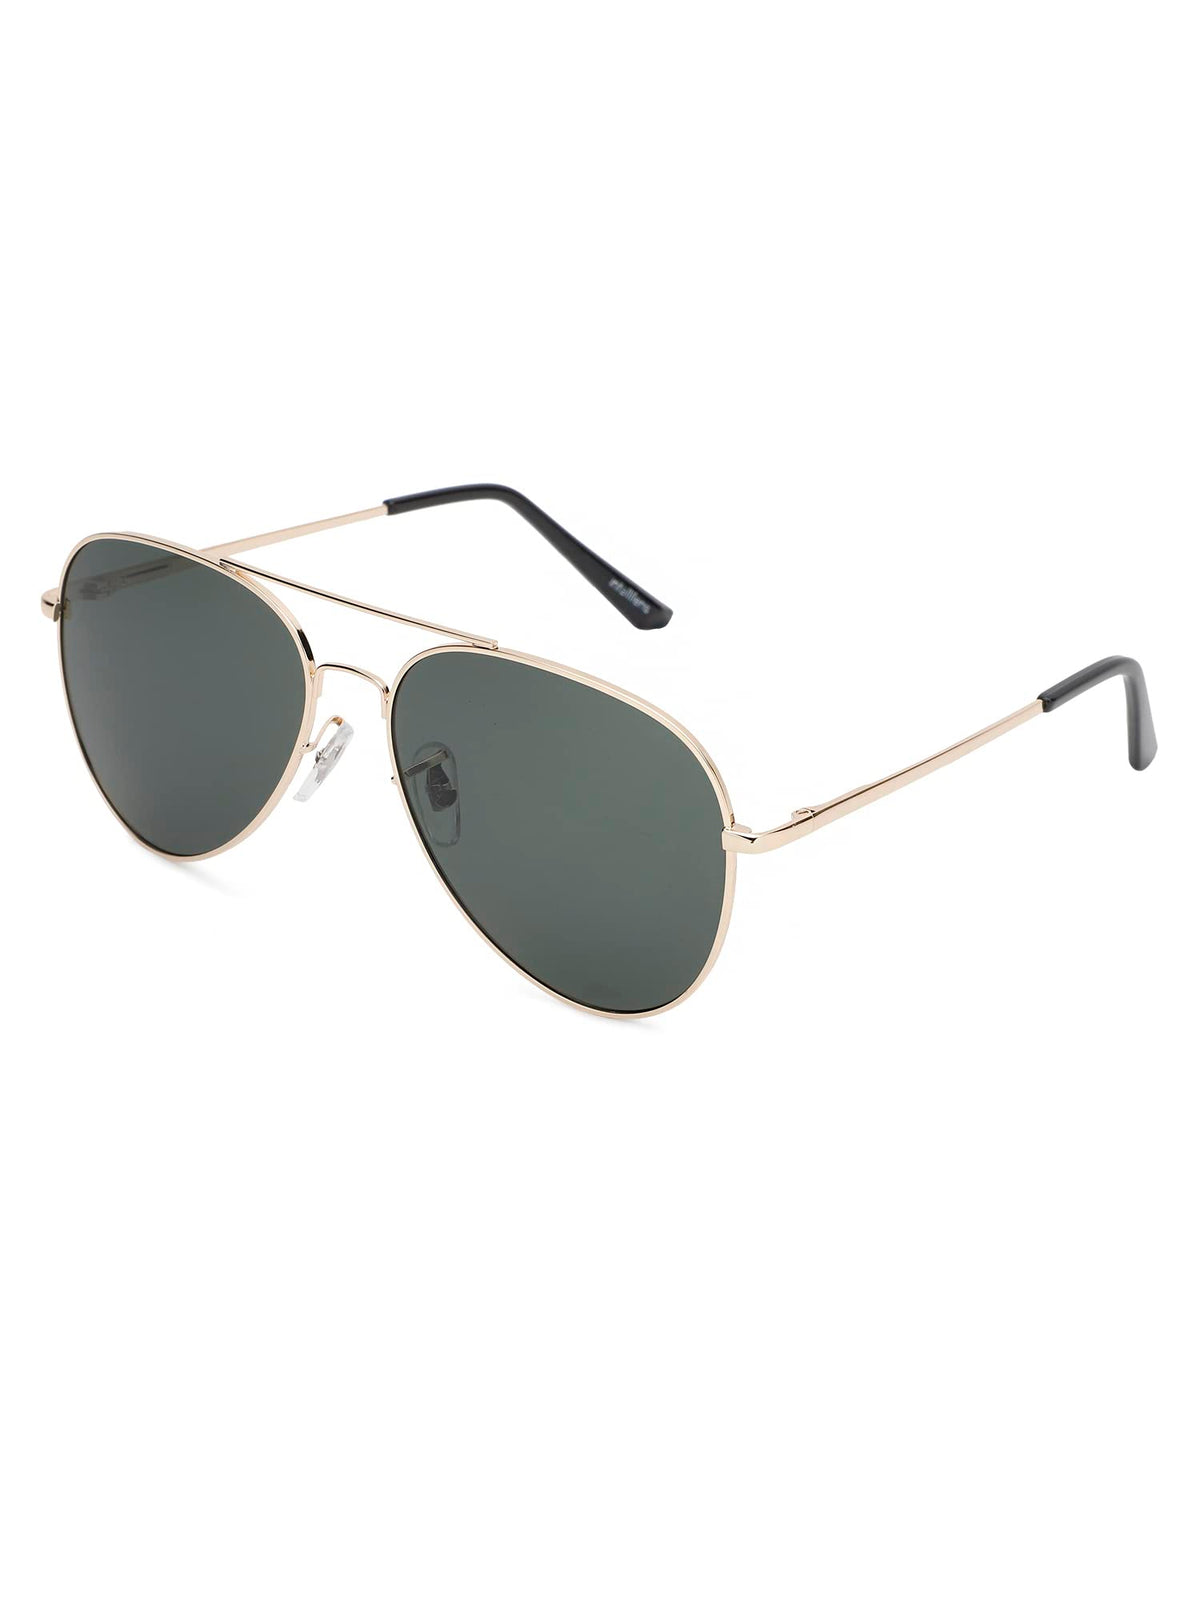 Intellilens Aviator Polarized & UV Protected Sunglasses For Men & Women | Goggles for Men & Women (Gold & Green) (60-20-145) - Pack of 1